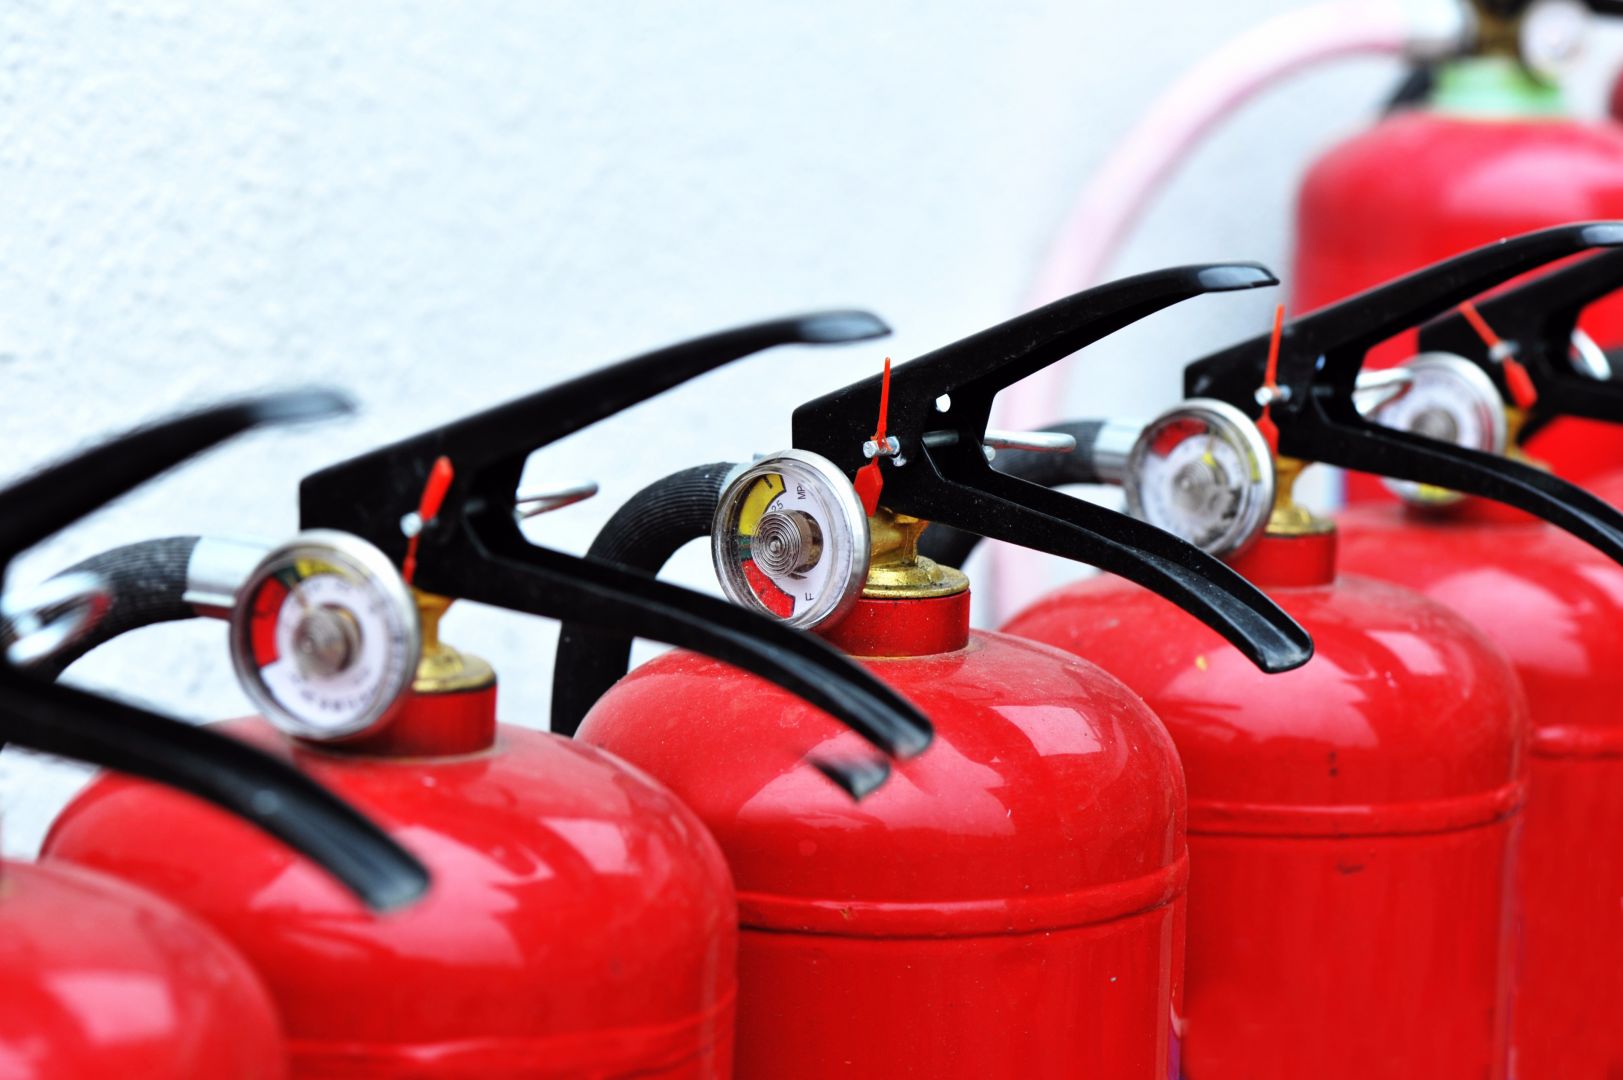 Poptávka na pravidelnou kontrolu provozuschopnosti požárních klapek (Požární technika a systémy) - Trutnov